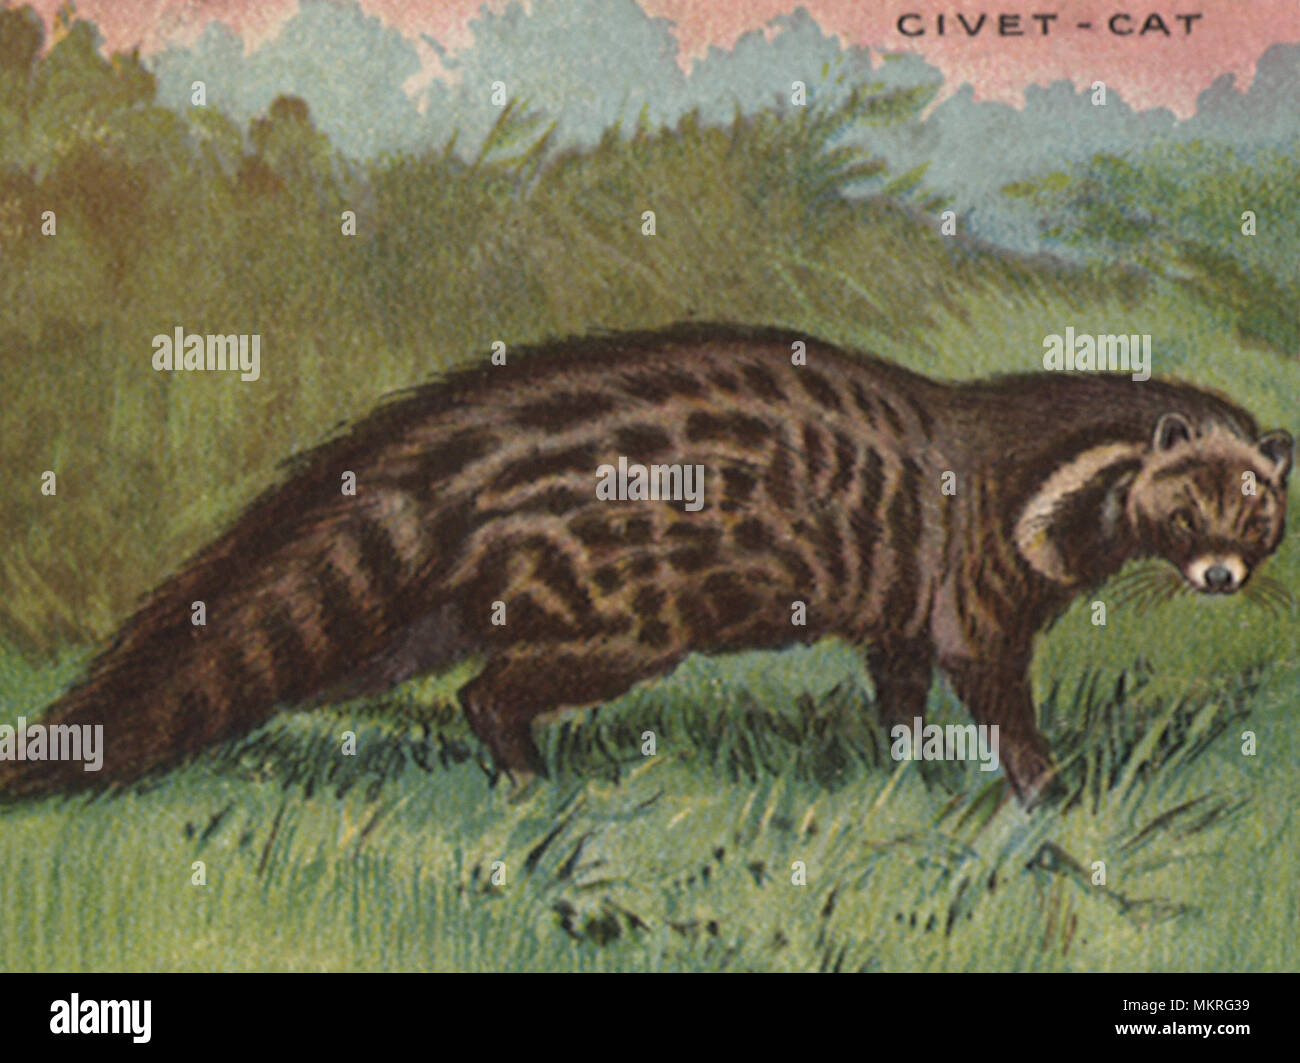 Civet - cat Stock Photo